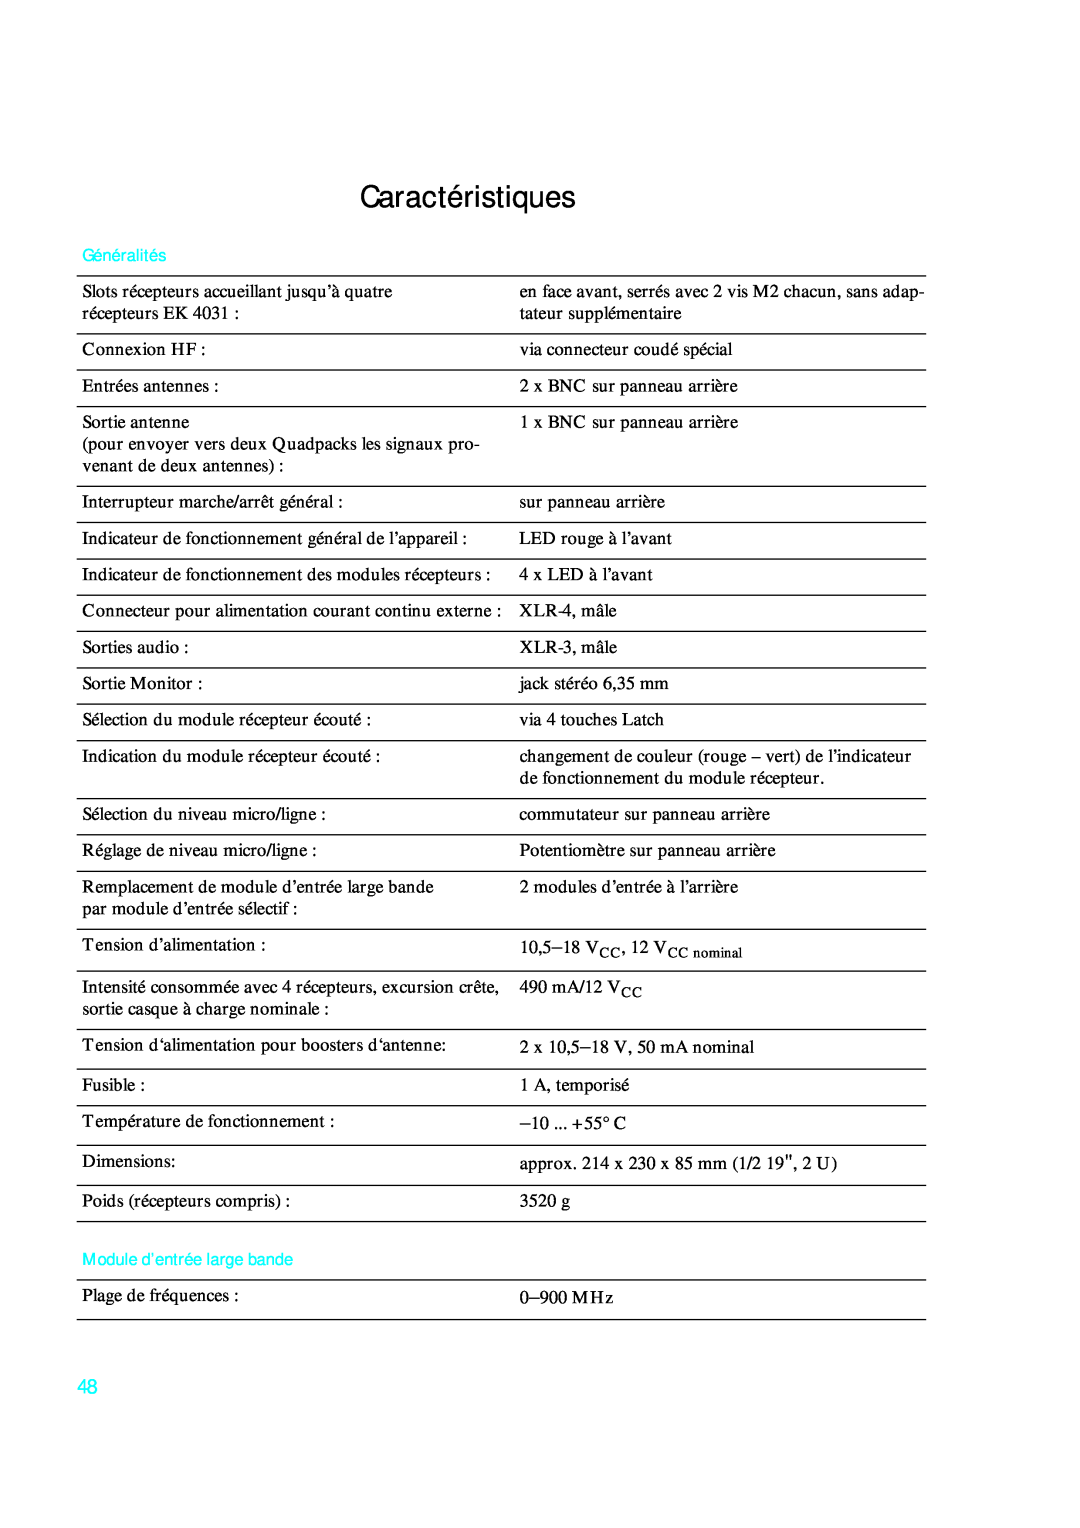 Sennheiser qp 3041 instruction manual Caractéristiques, Généralités, Module d’entrée large bande 